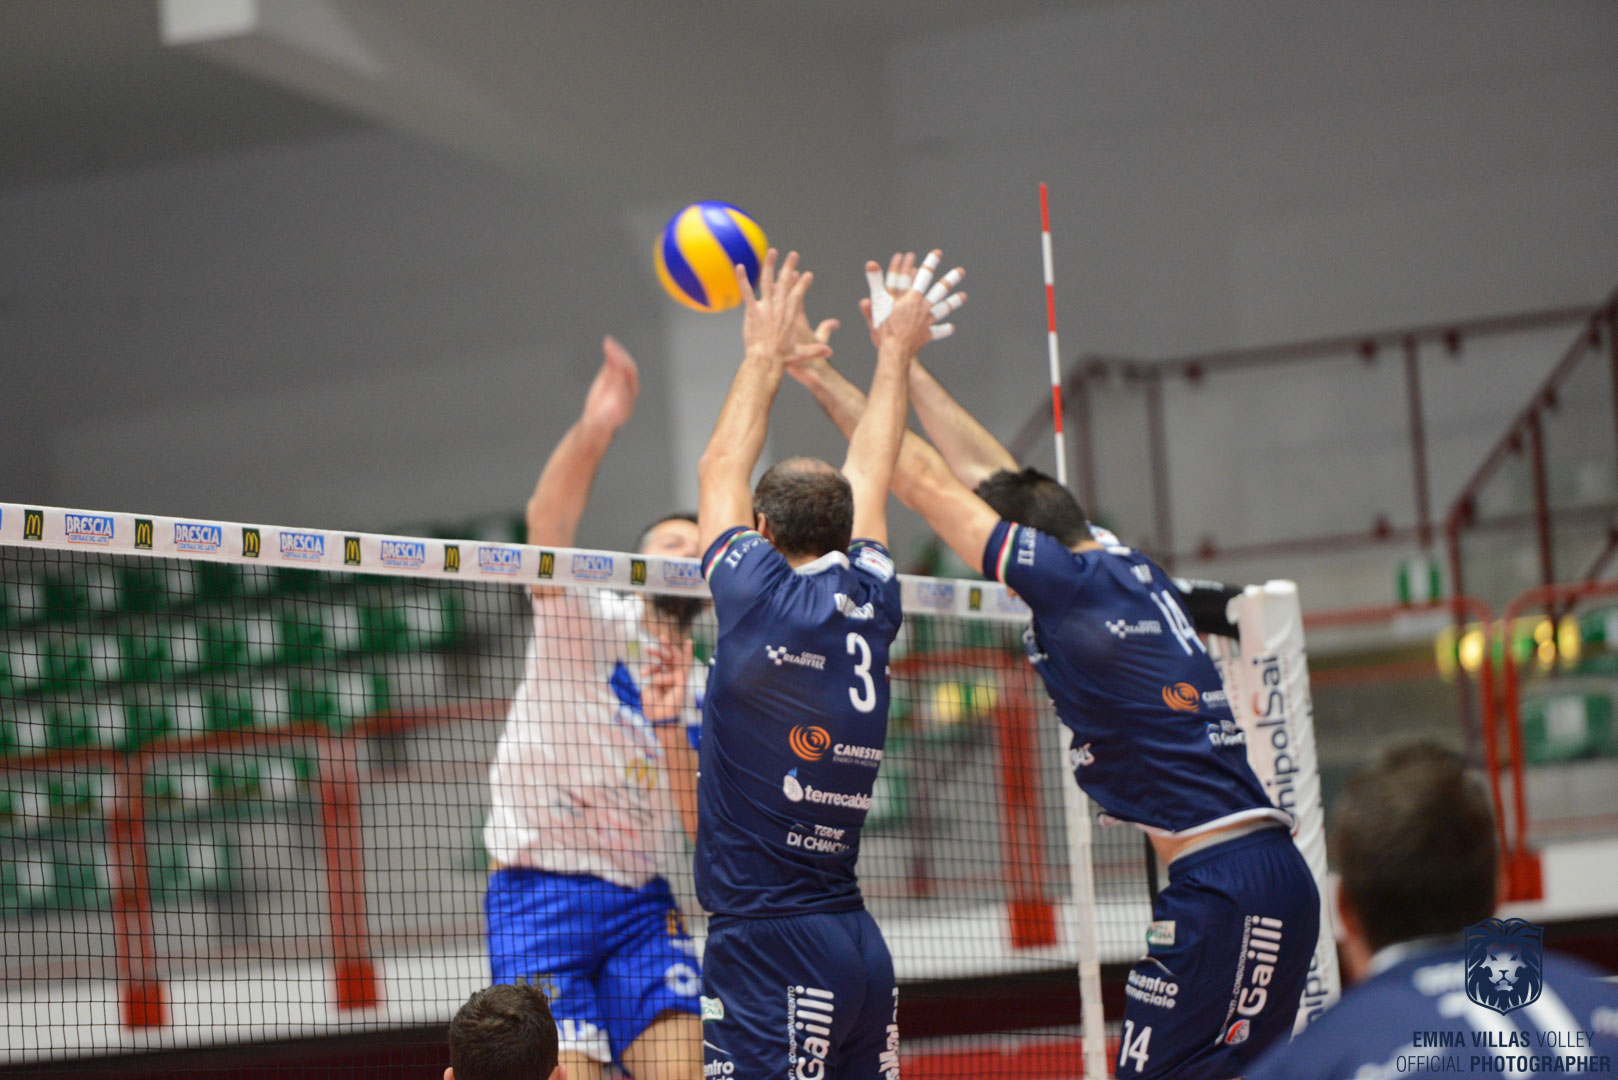 Volley: Siena k.o. a Brescia